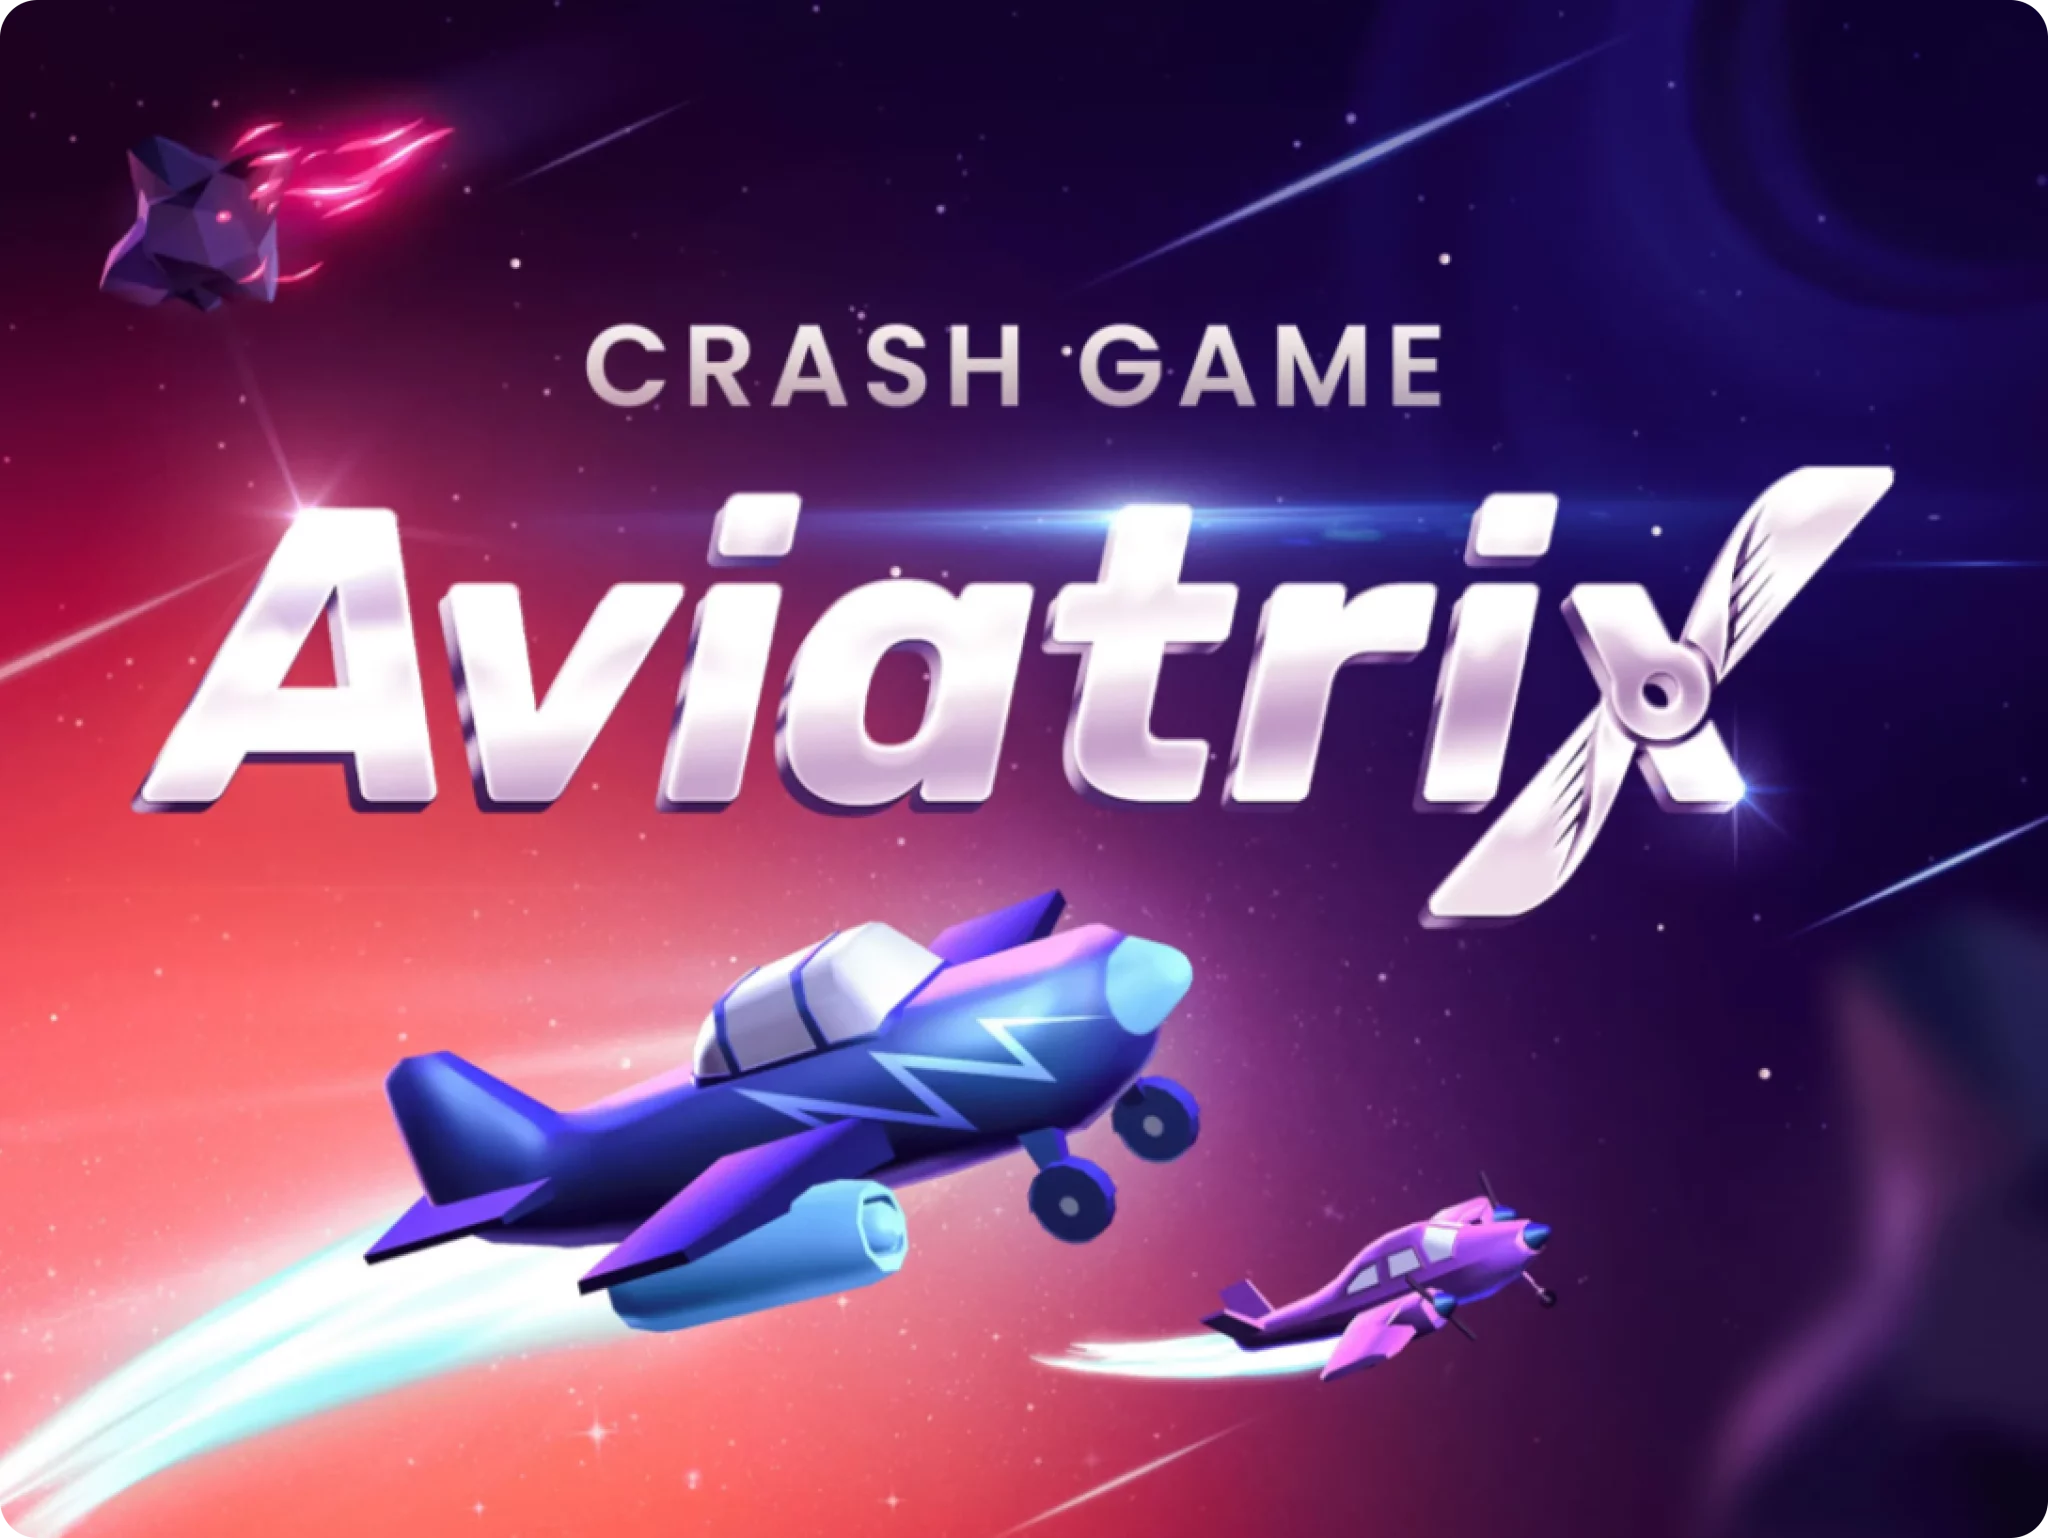 Авиатор игра на бесплатные деньги aviatrix site. Авиатрикс. Aviatrix game. Aviatrix Slot. Aviatrix ставки.